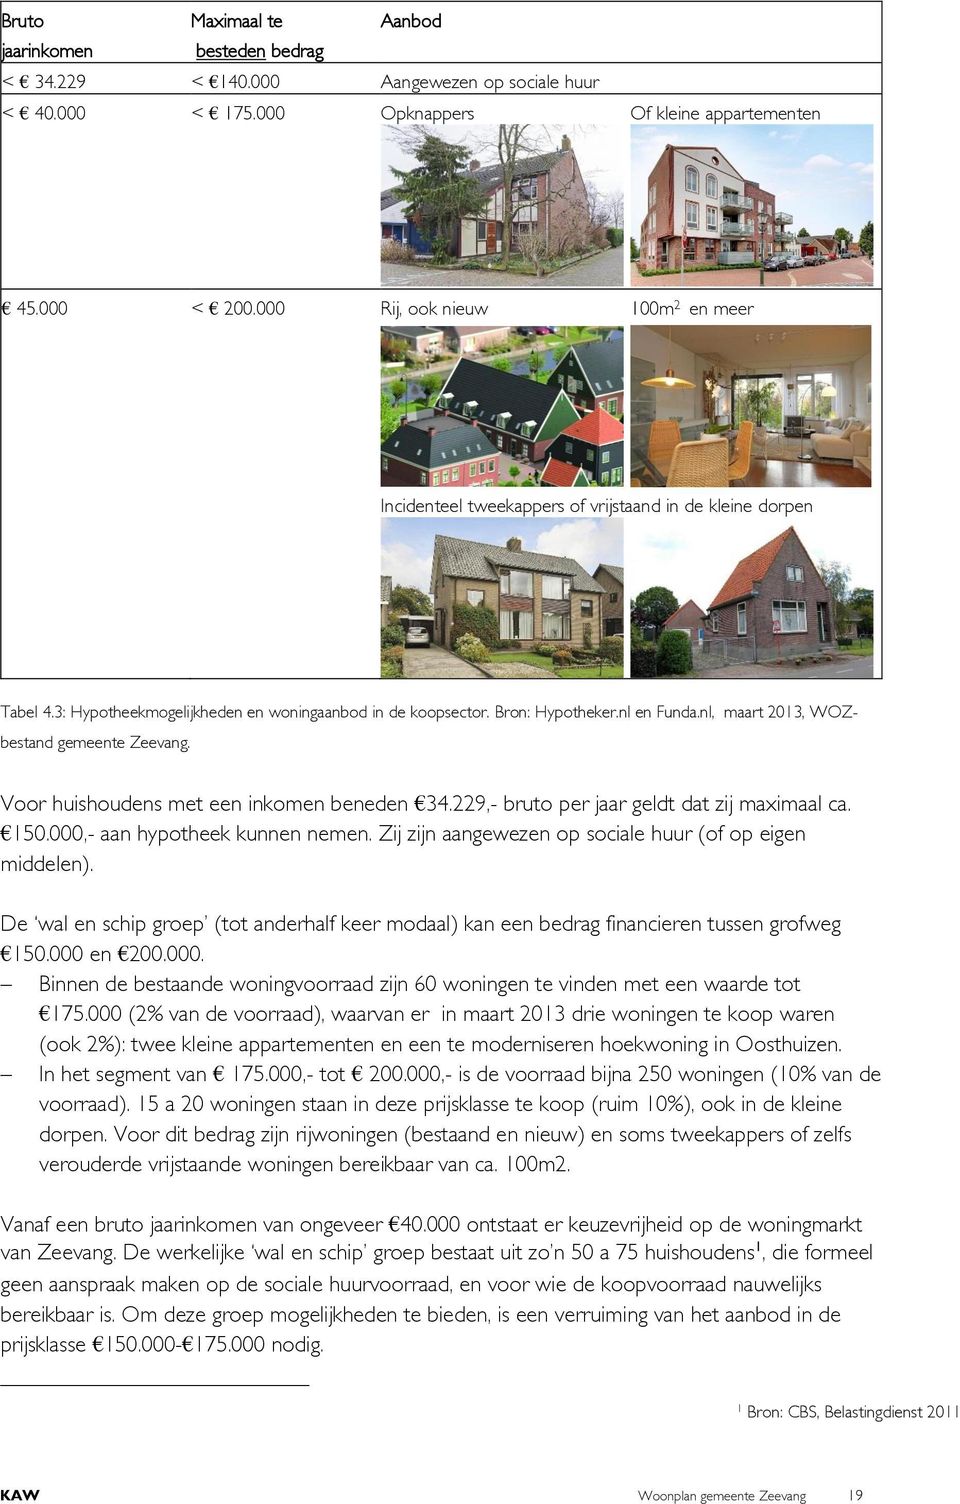 nl, maart 2013, WOZbestand gemeente Zeevang. Voor huishoudens met een inkomen beneden 34.229,- bruto per jaar geldt dat zij maximaal ca. 150.000,- aan hypotheek kunnen nemen.